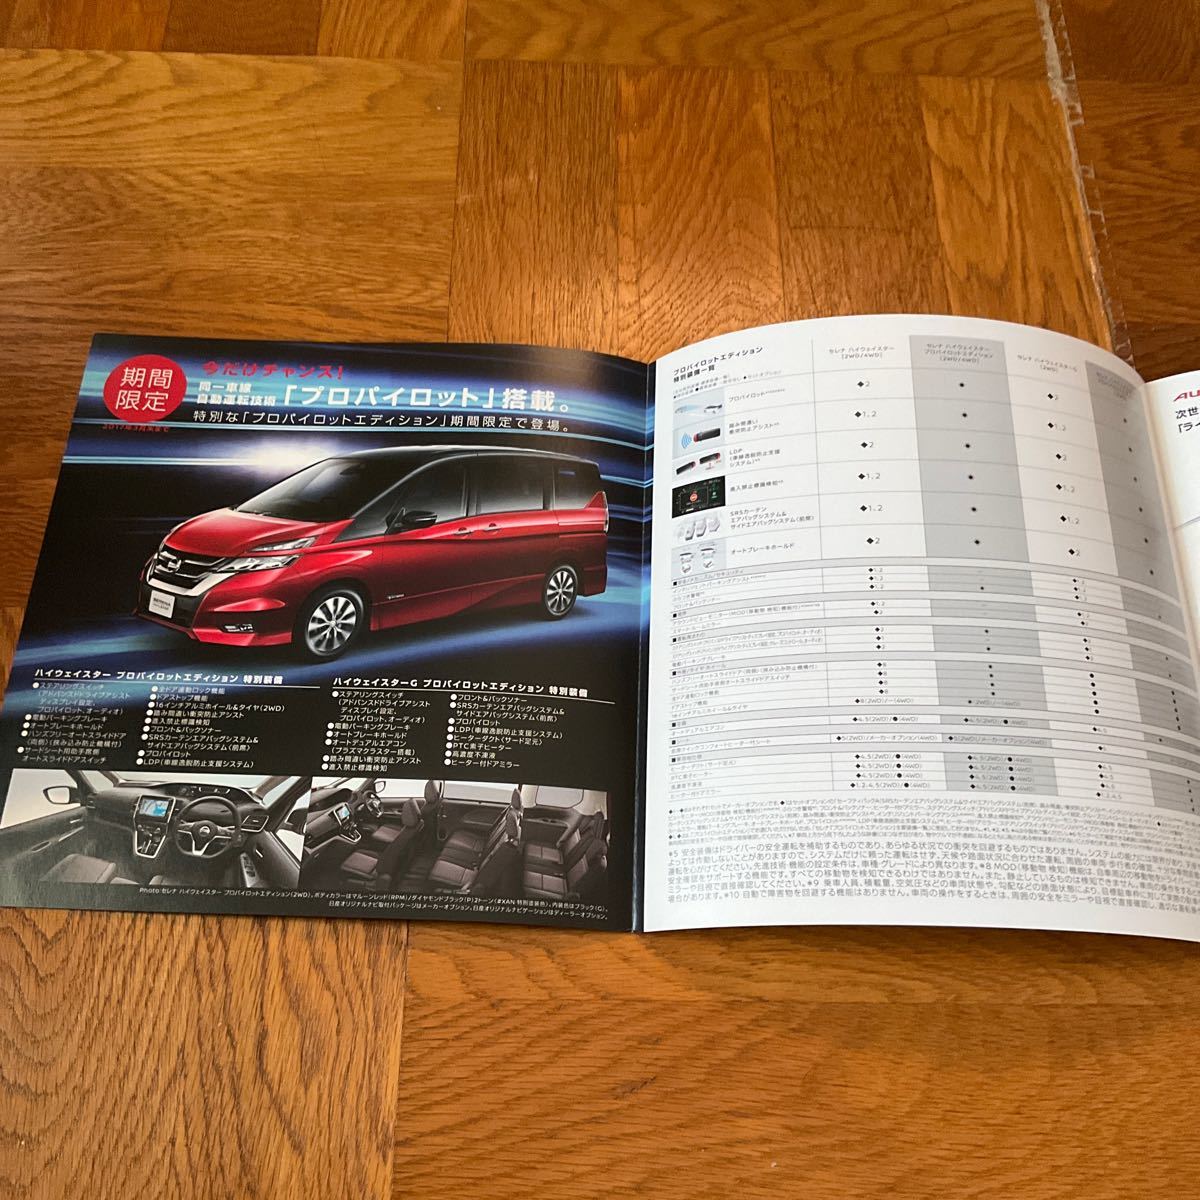 [ бесплатная доставка ] Nissan Serena Highway Star Pro Pilot выпуск каталог 